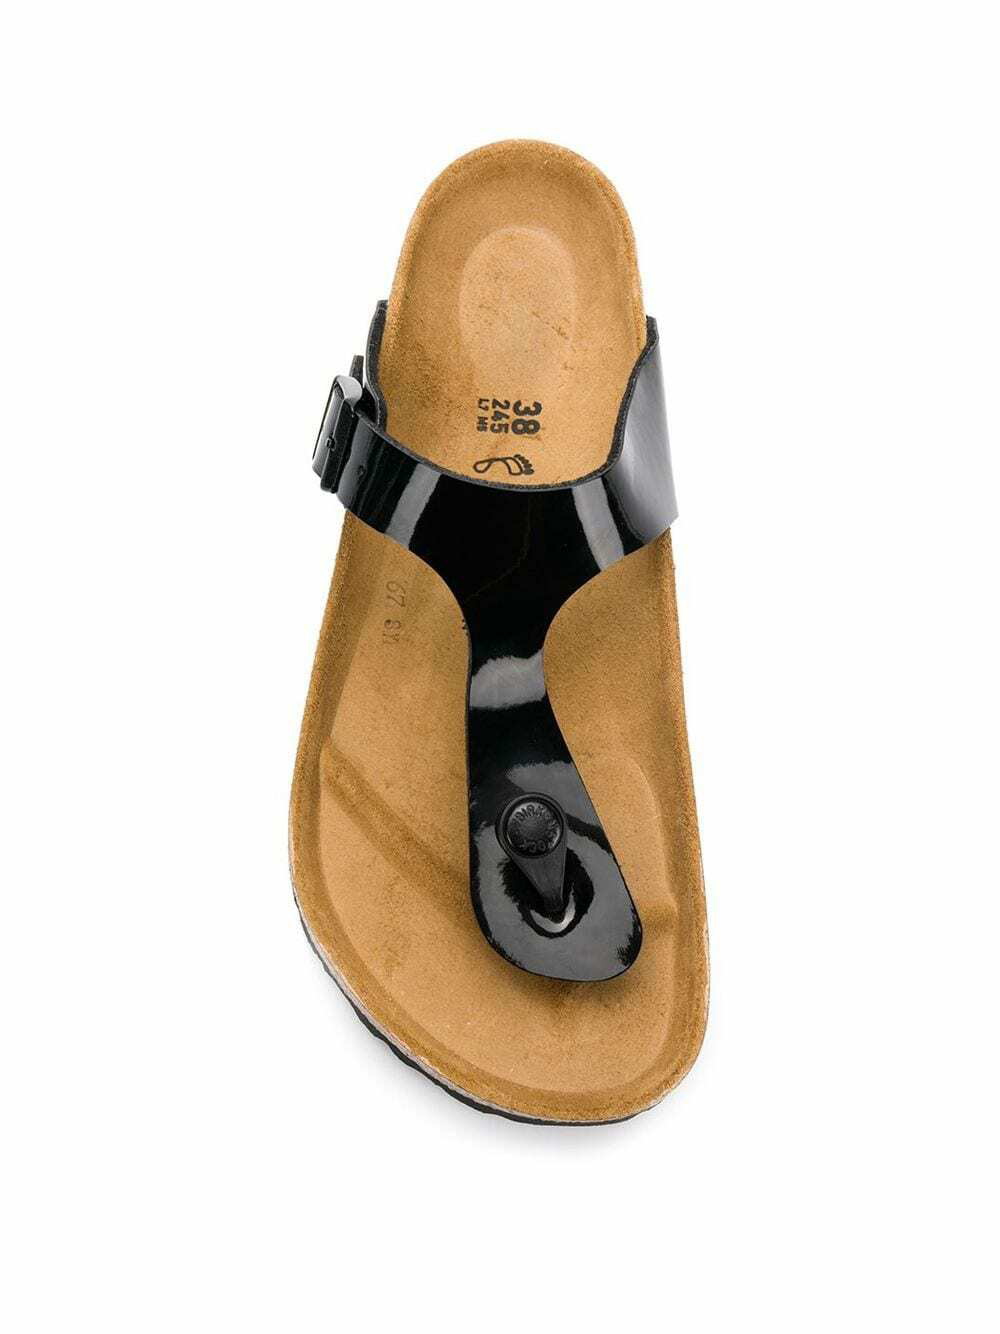 Birkenstock GIZEH - T-bar sandals - mocca/light brown 